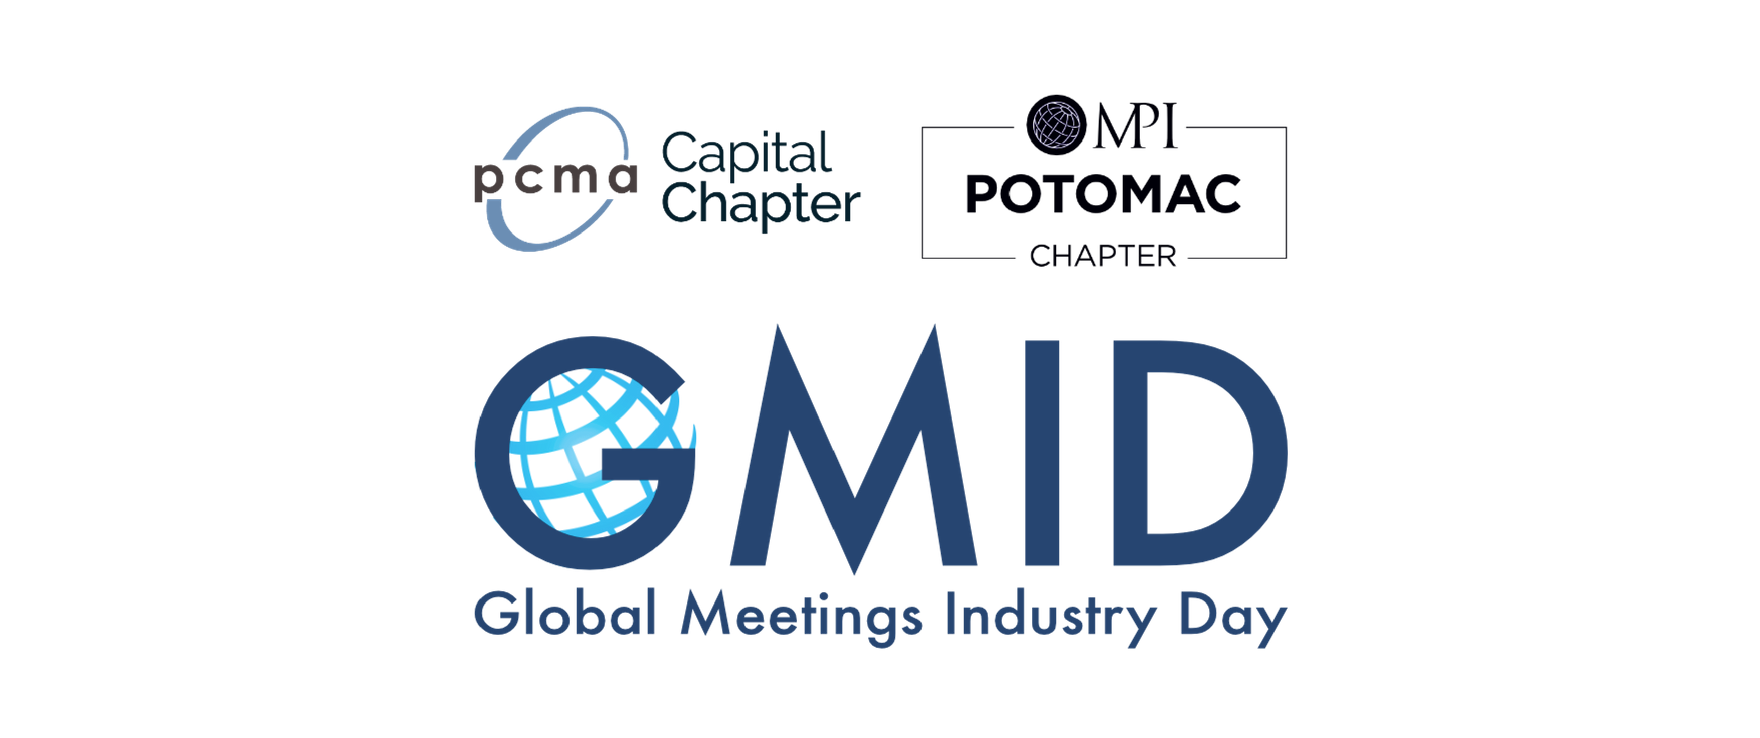 2018 Global Meetings Industry Day